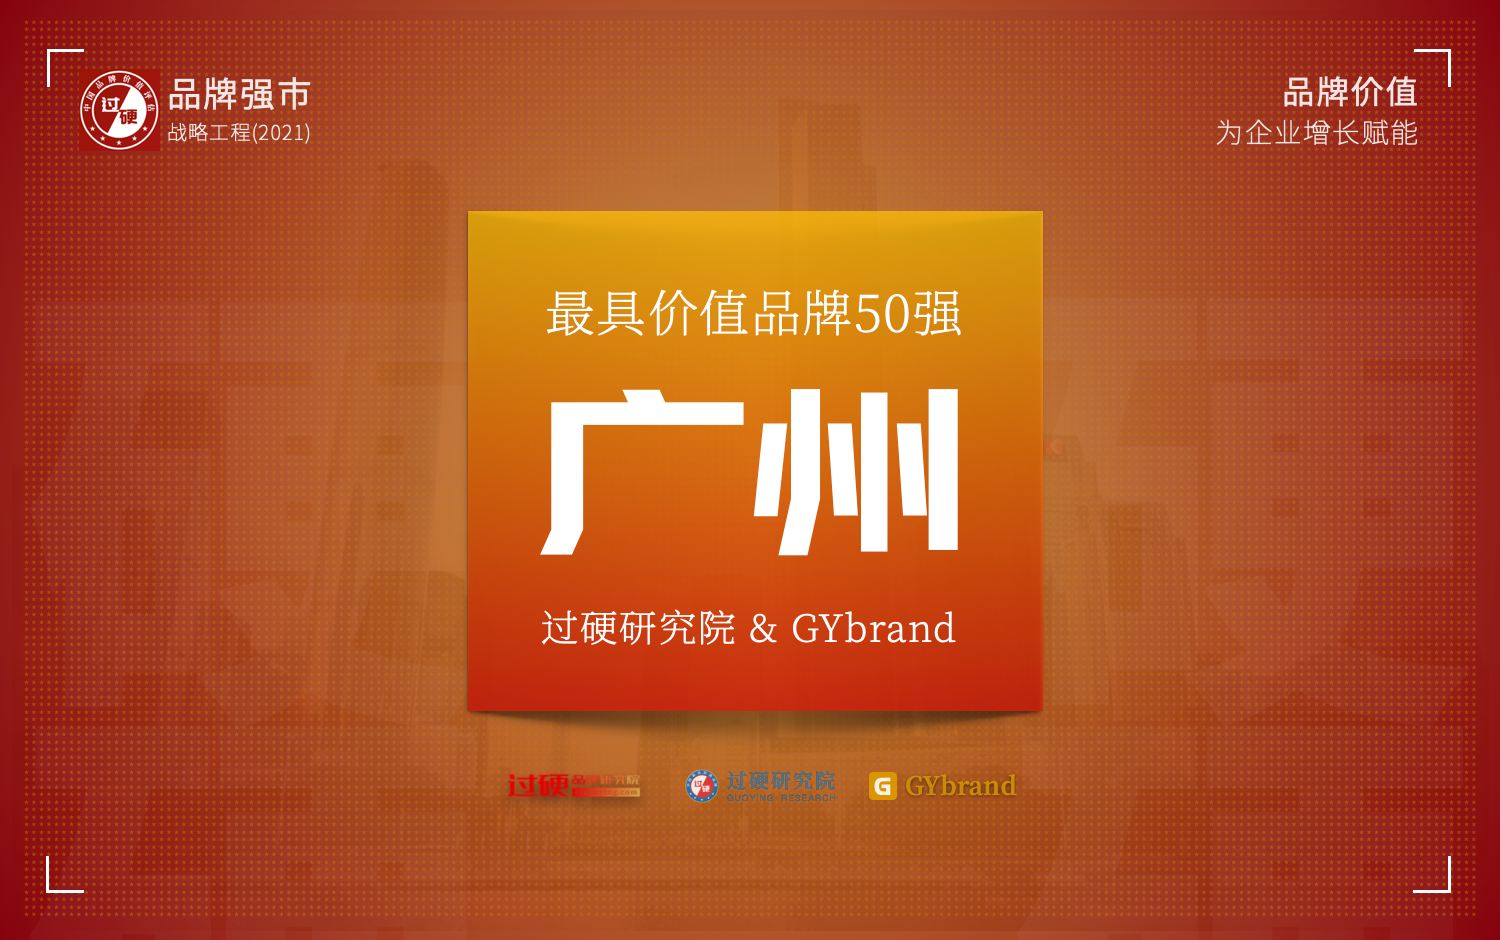 2021年度“广州最具价值品牌”50强企业重磅发布